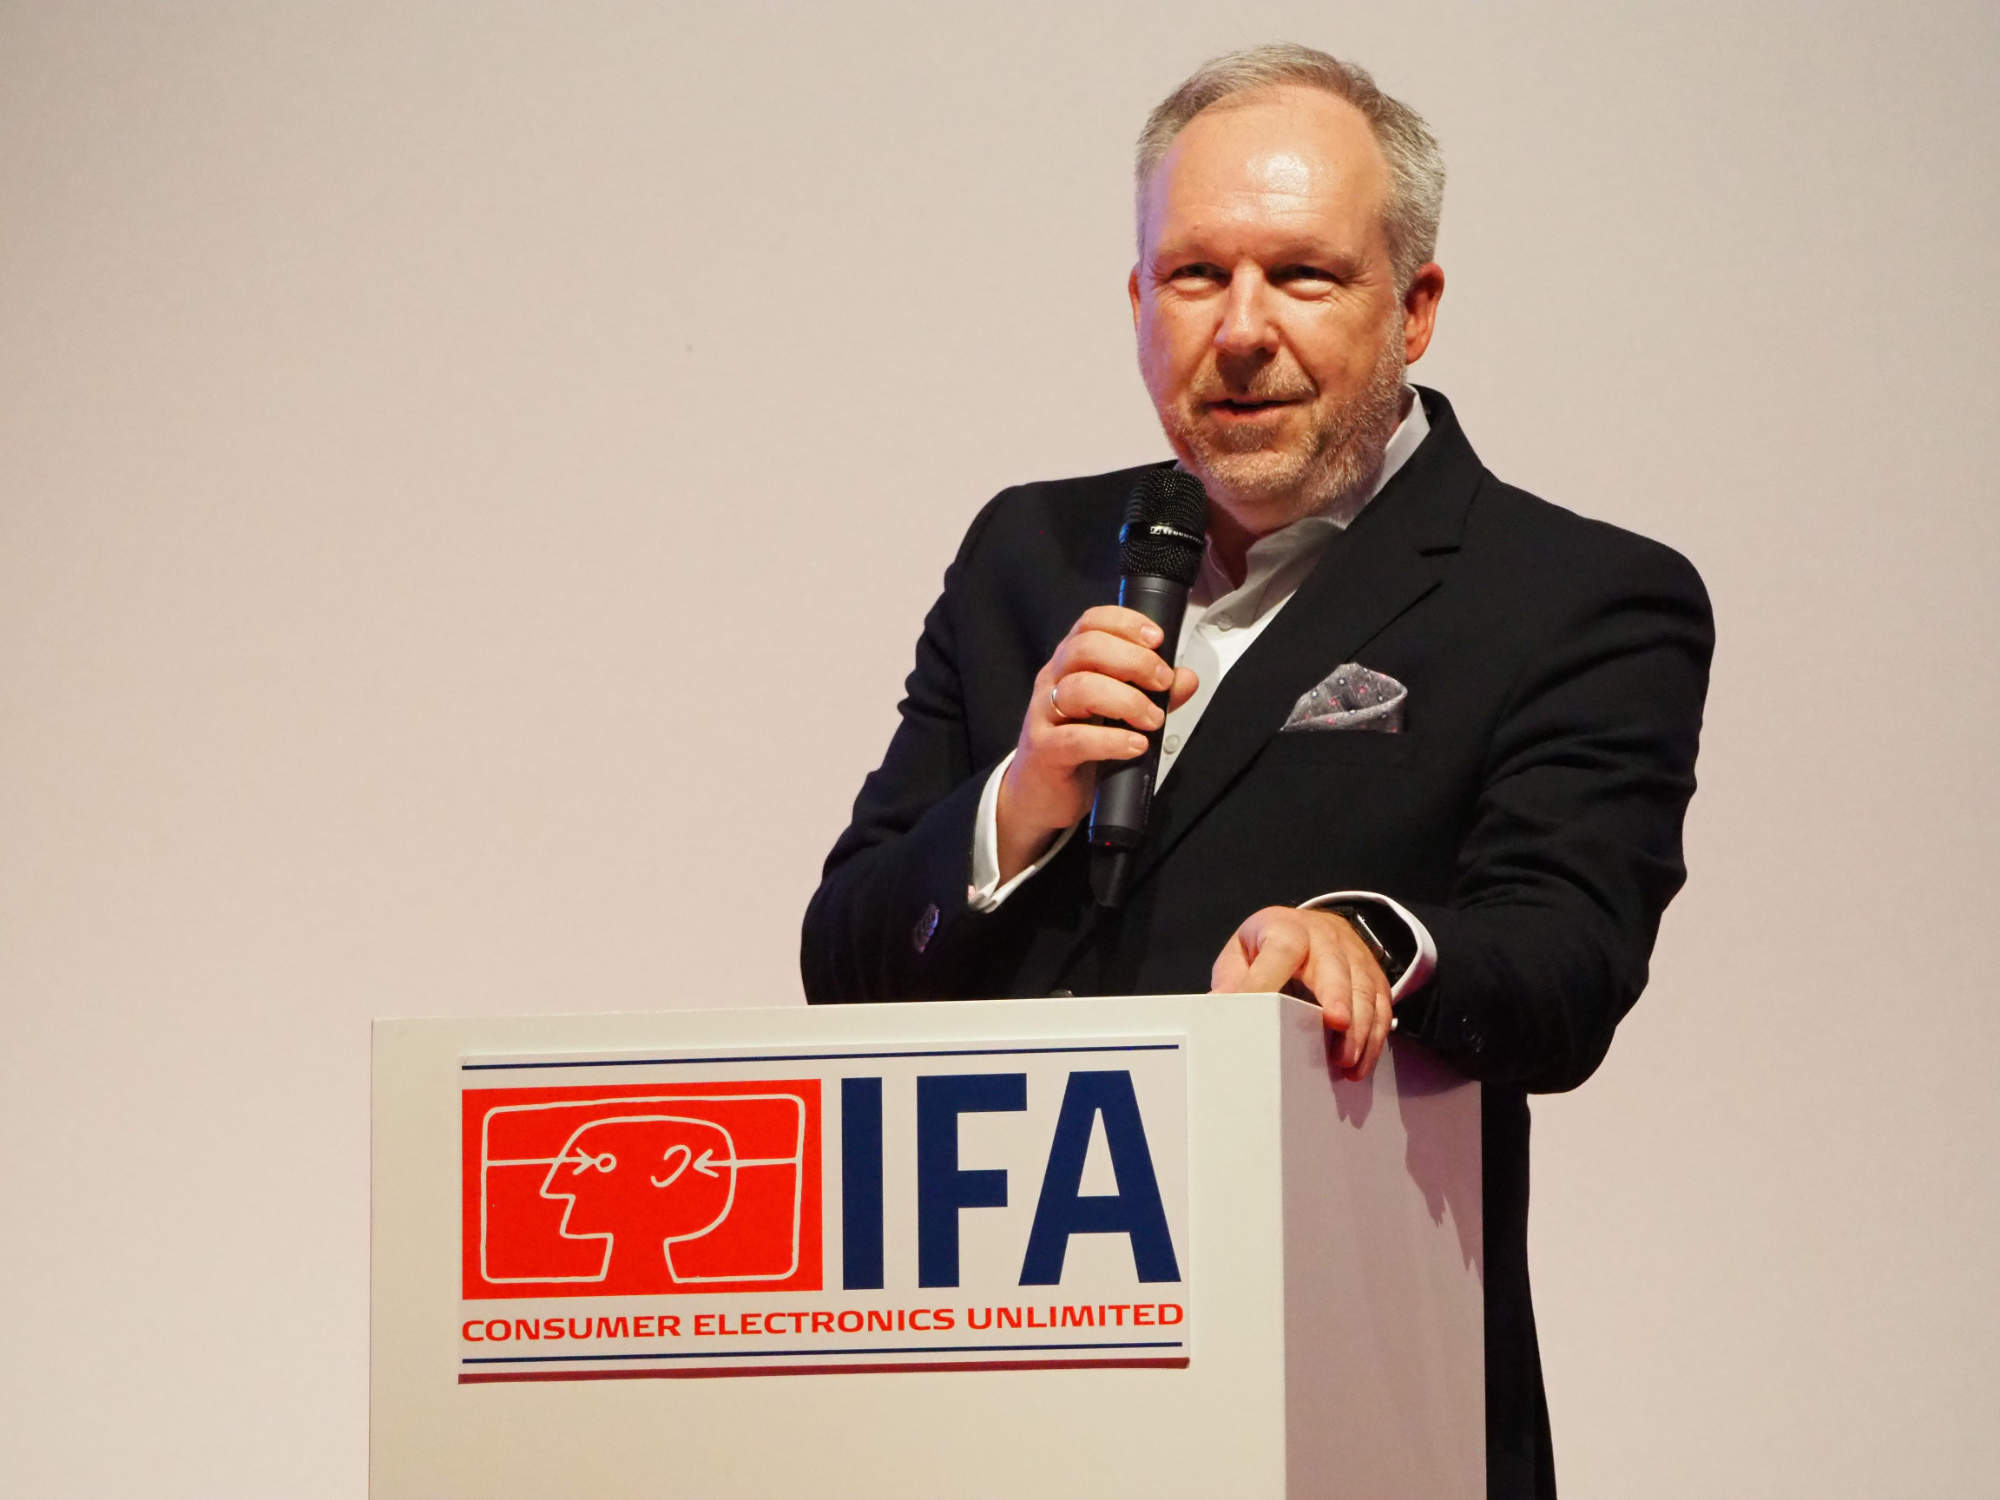 „Ein viel versprechender Vorgeschmack auf eine tolle IFA 2022“, David Ruetz, Senior Vice President der IFA 2022.